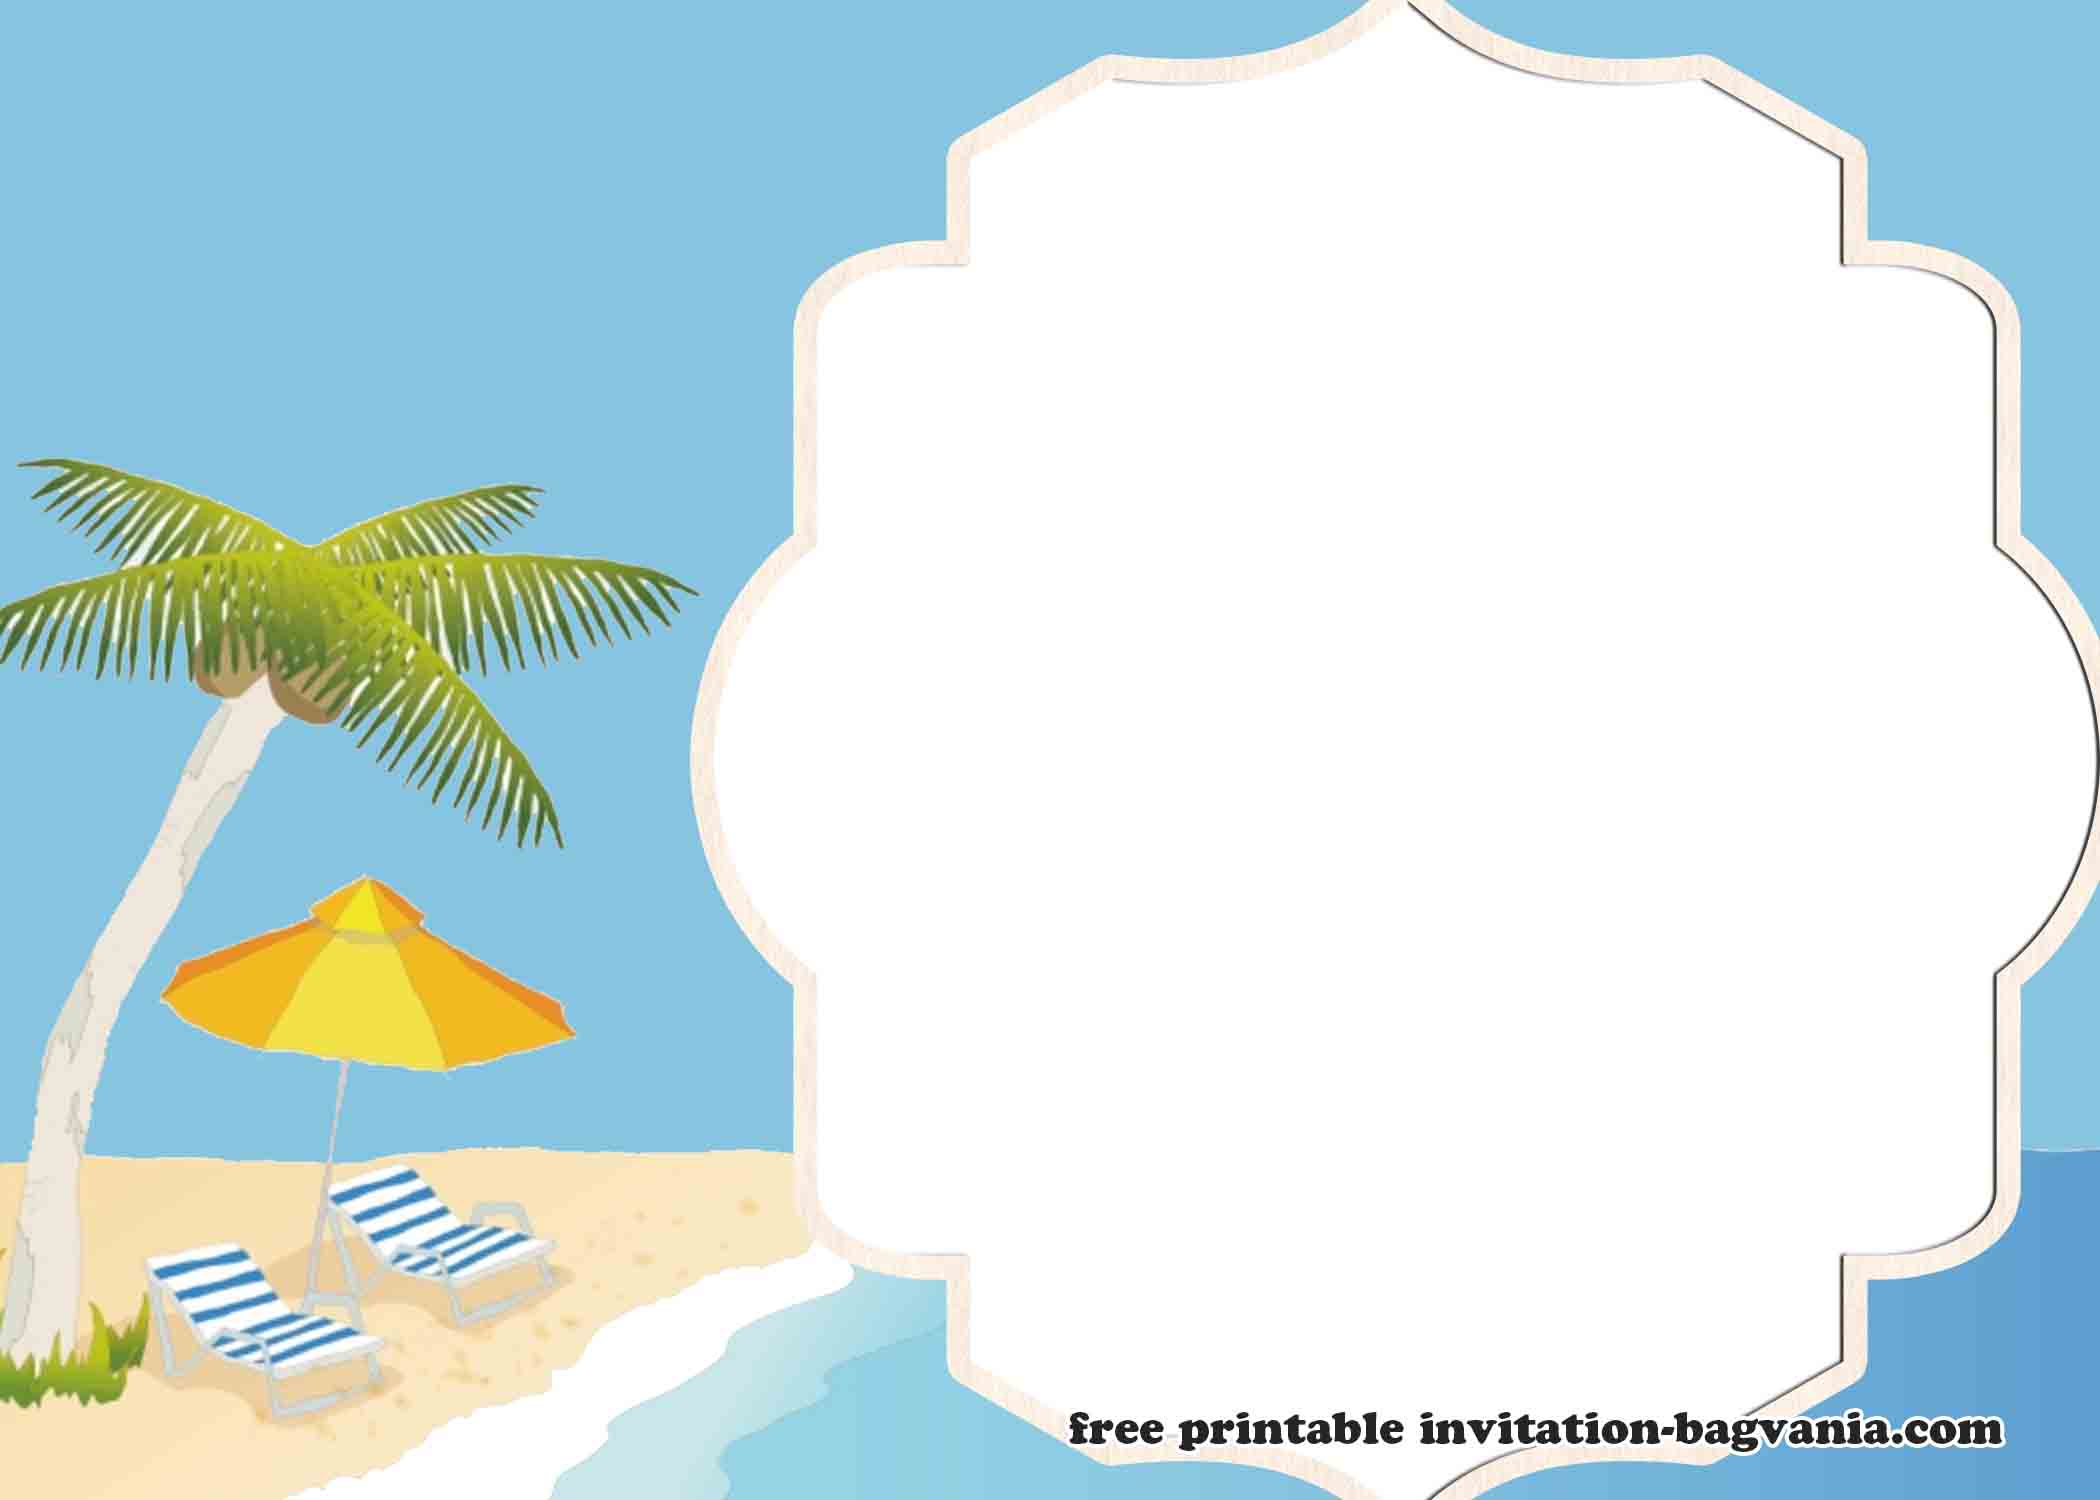 free-printable-beach-theme-templates-printable-word-searches